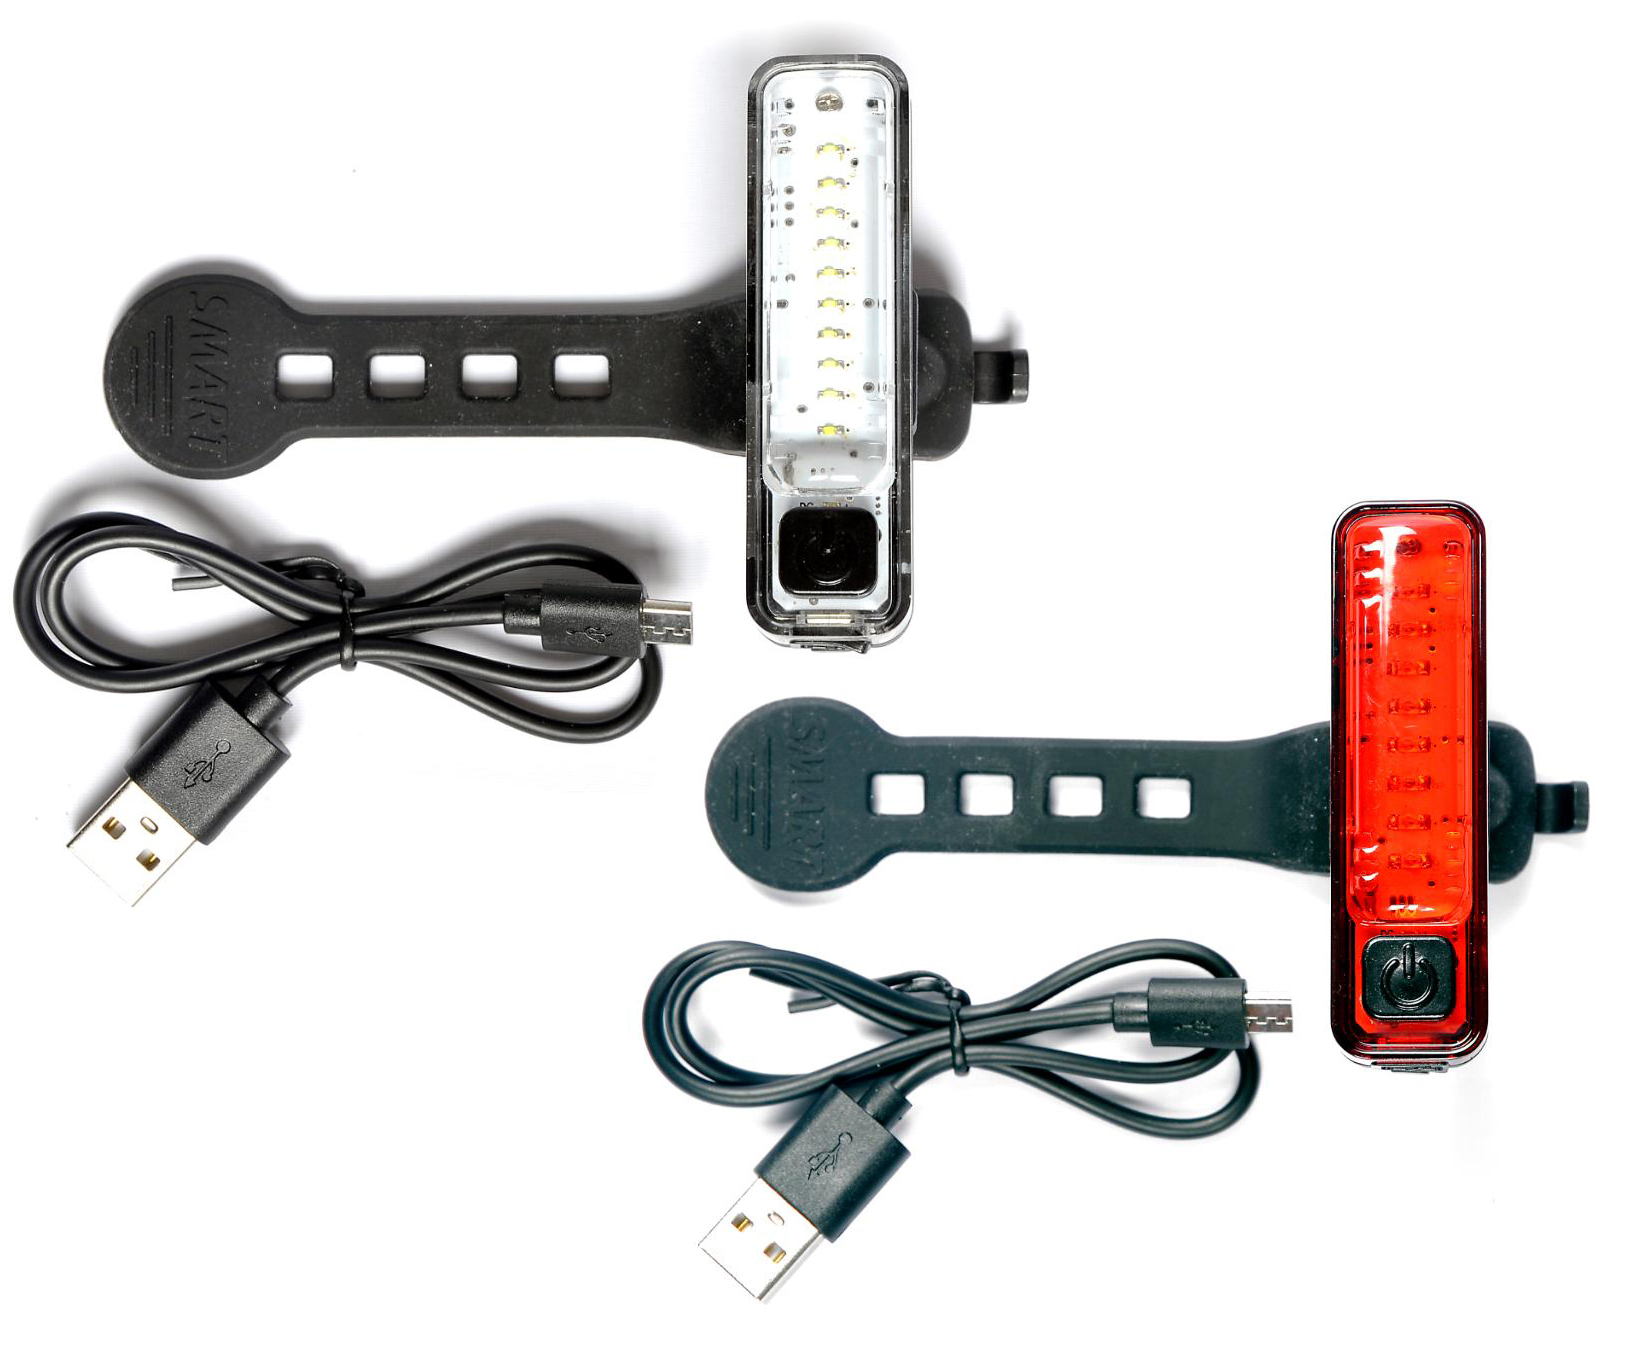 Sykkellykter - Smart Micro 7 USB LED Lyktesett